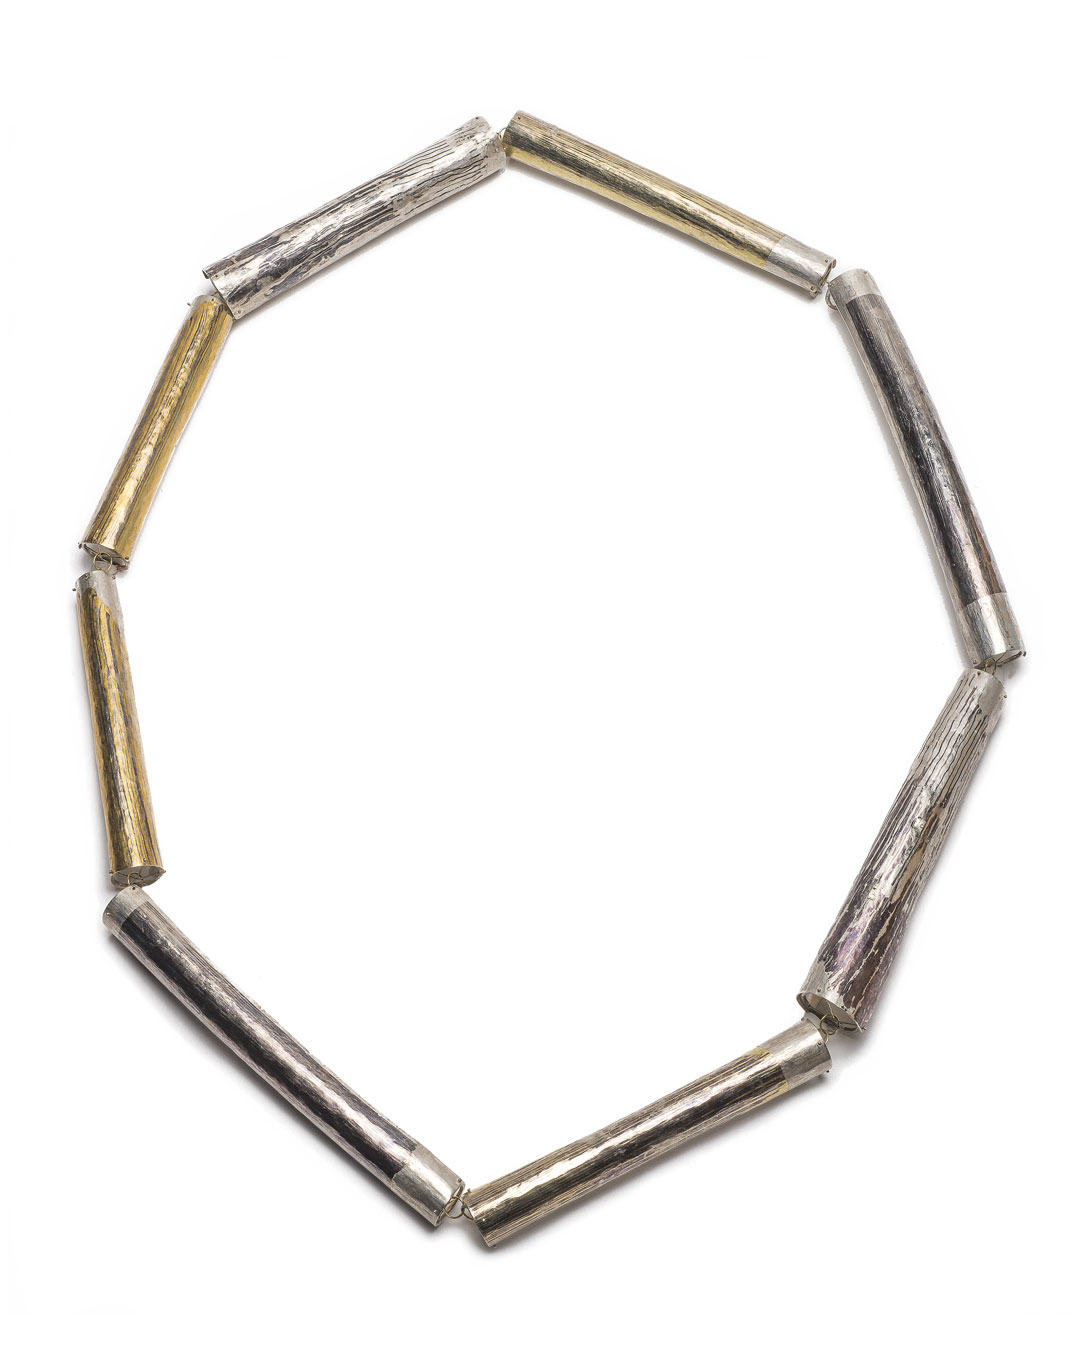 Stefano Marchetti, untitled, 2018, necklace; silver, shibuichi, gold, palladium, 370 x 81 x 6 mm, price on request